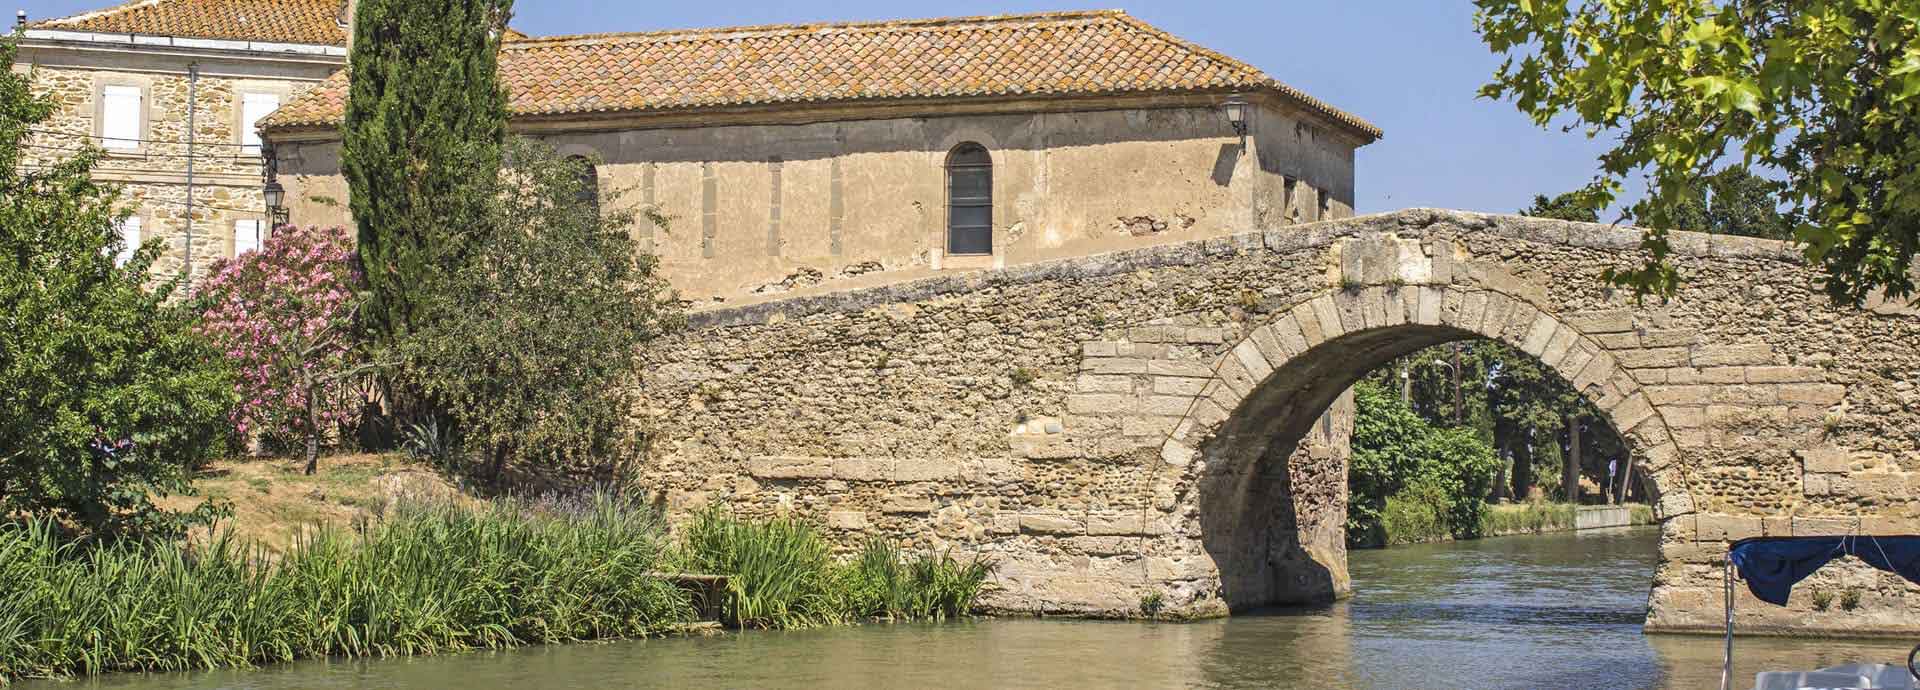 Le canal du Midi et Pont Neuf de Somail situé dans le département de l’Aude